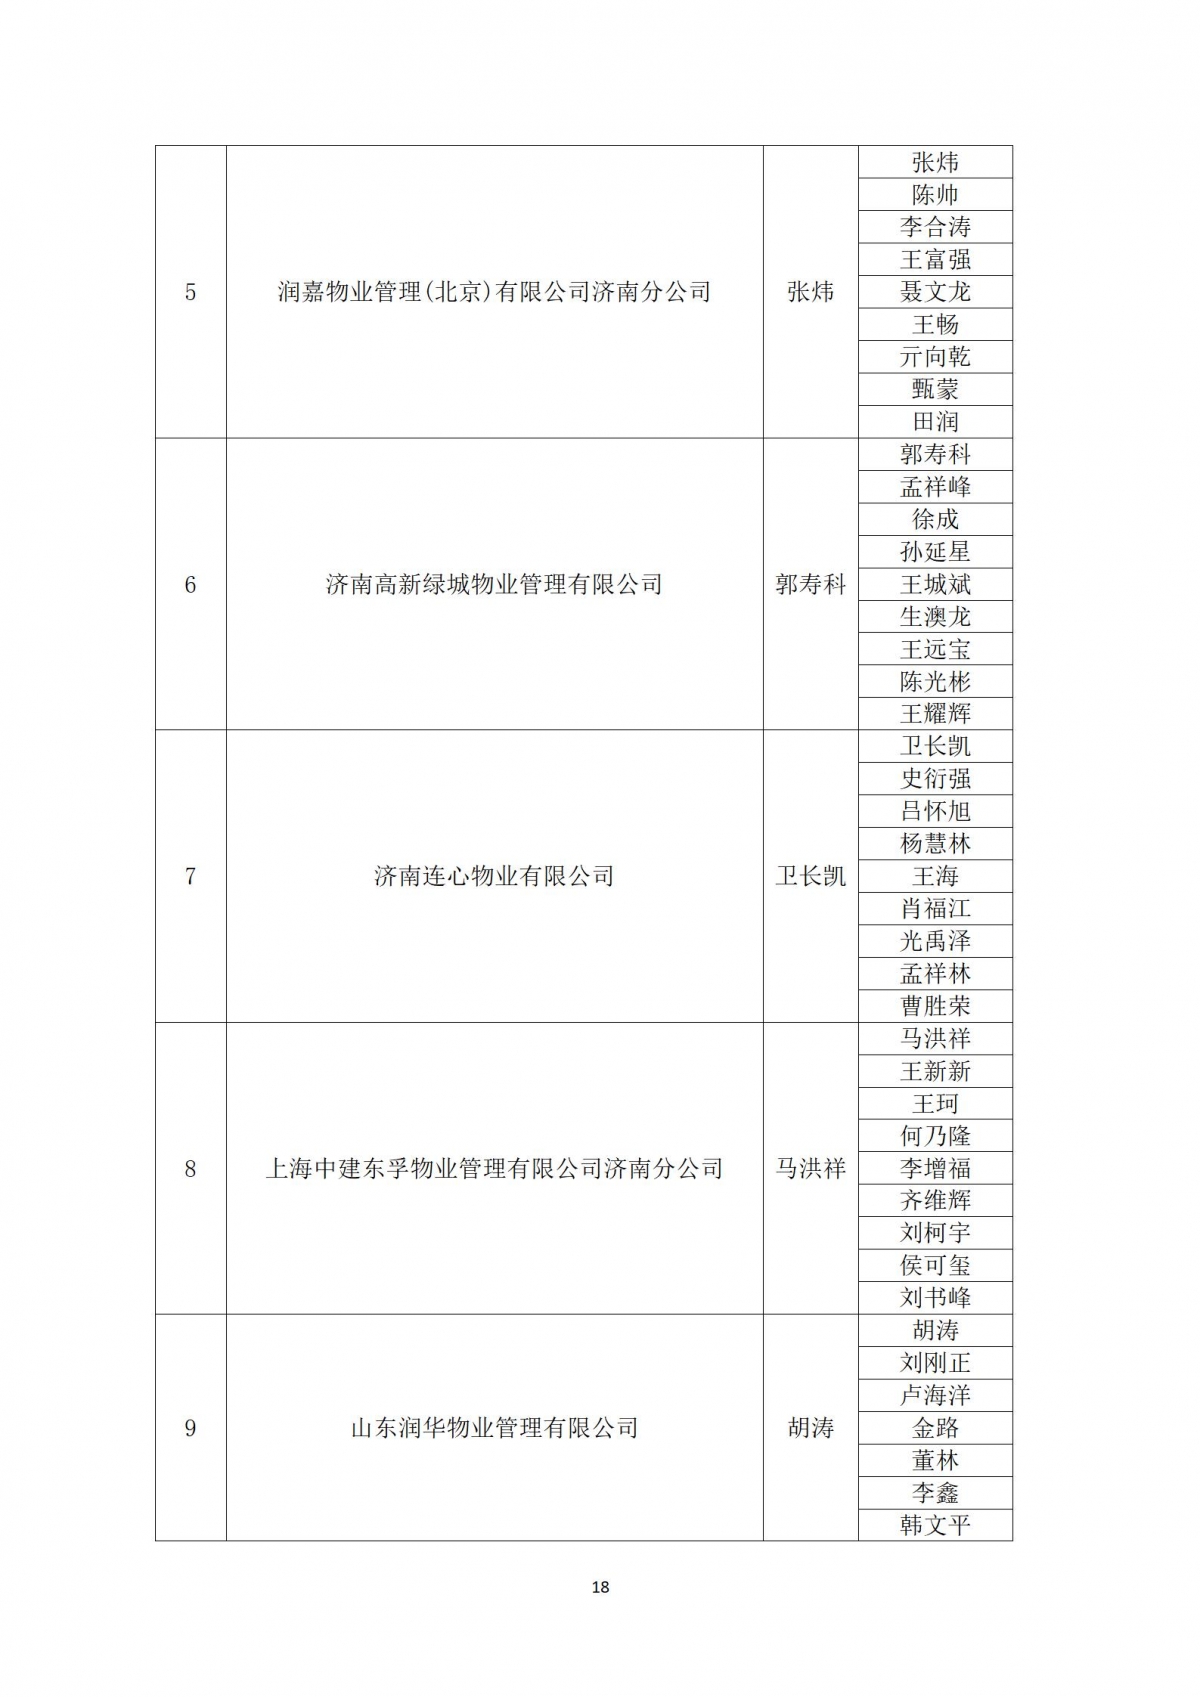 关于“天城杯”第七届济南市物业服务行业职业技能竞赛选手名单的公示_18